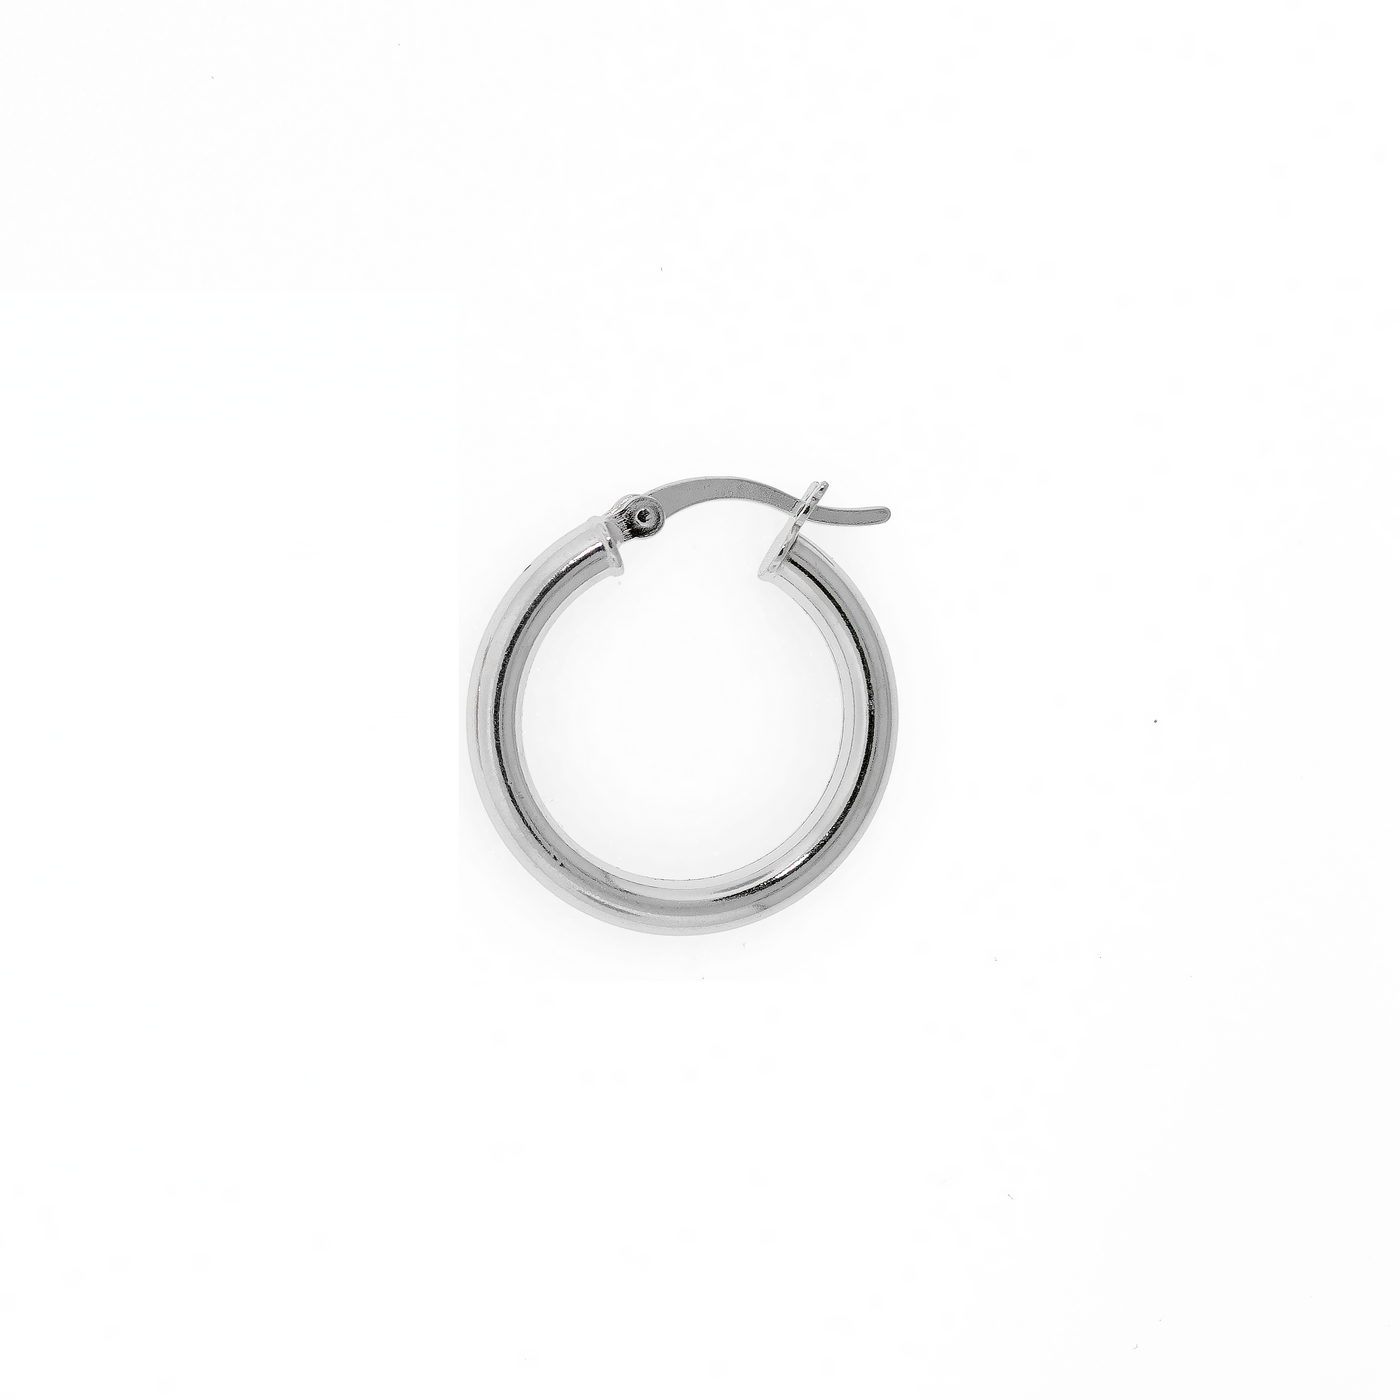 Hoop Earring 3 mm Silver - Rhodium